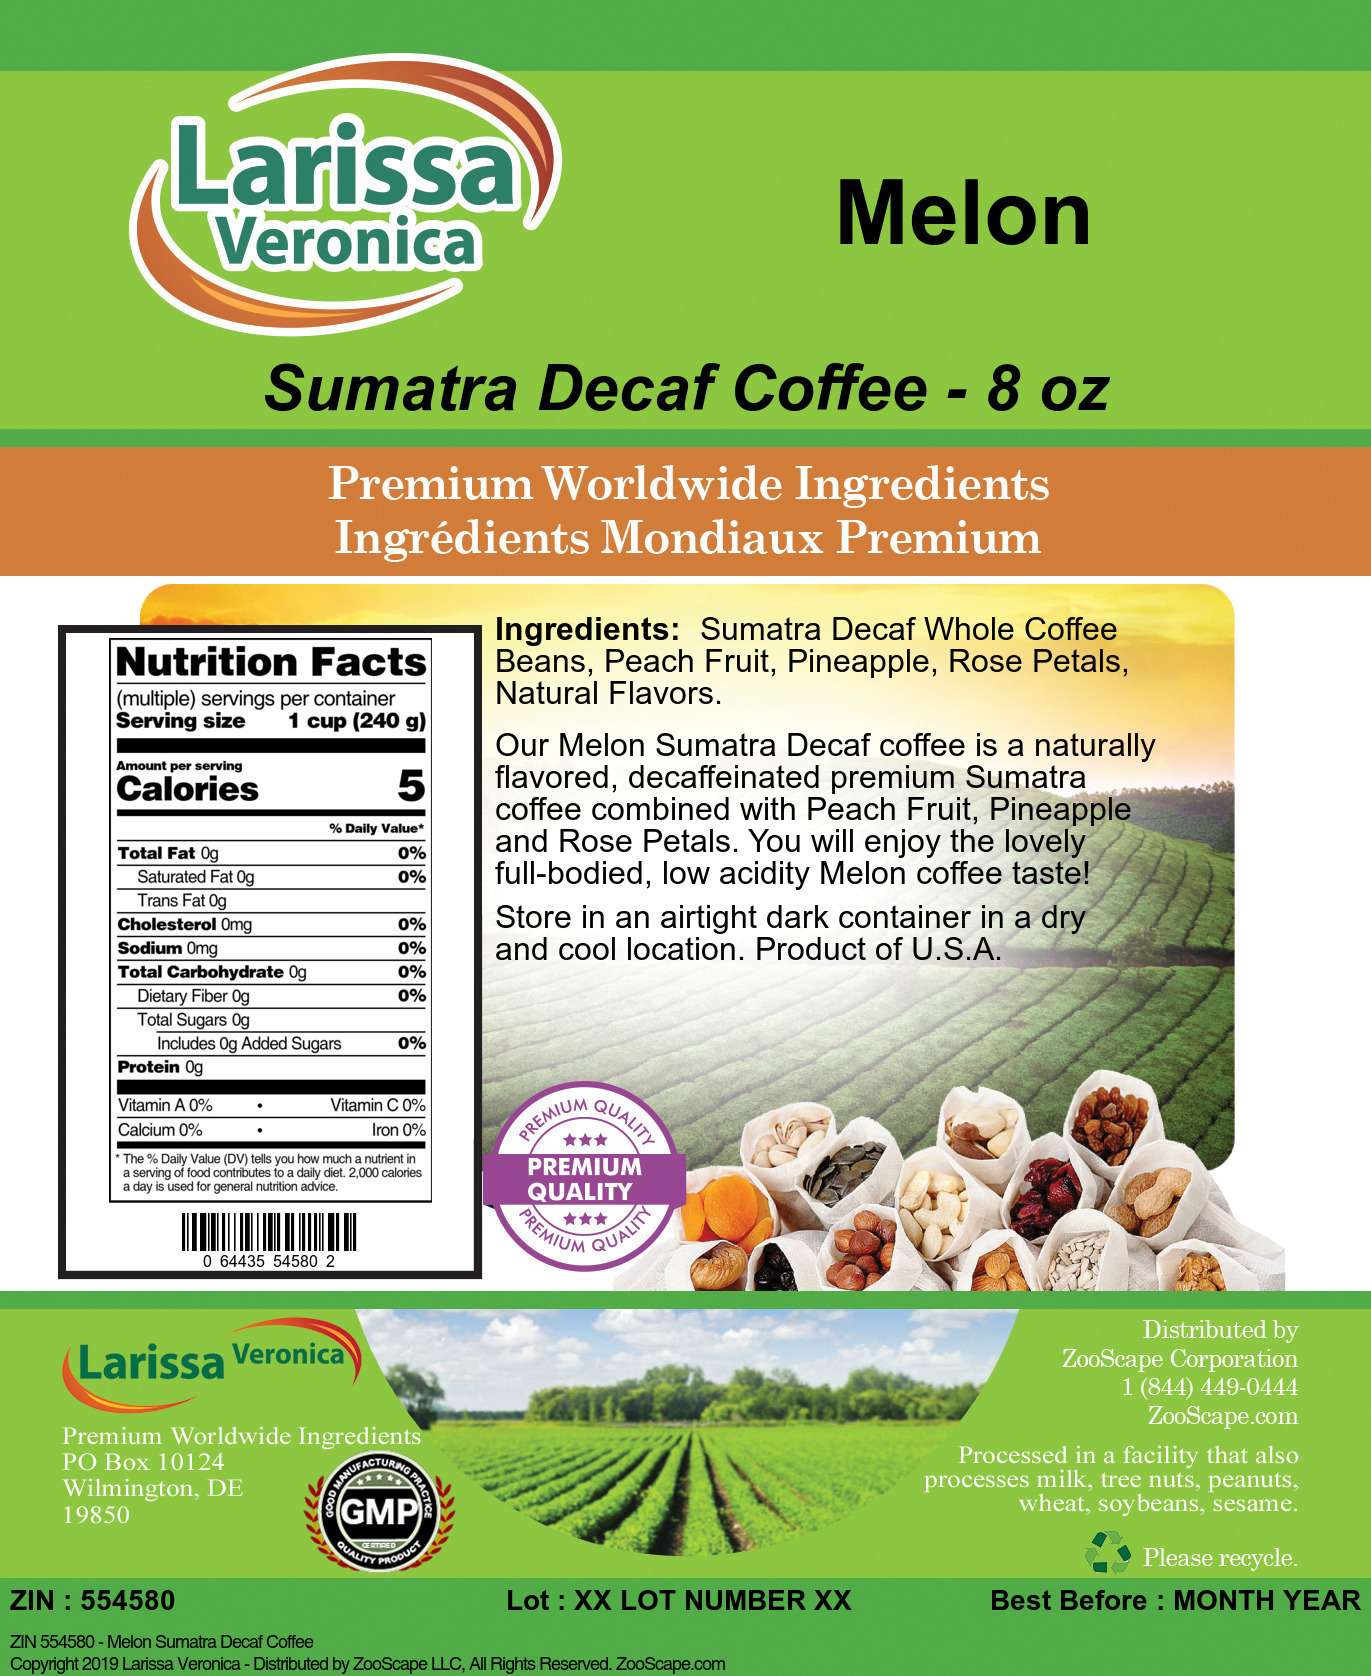 Melon Sumatra Decaf Coffee - Label